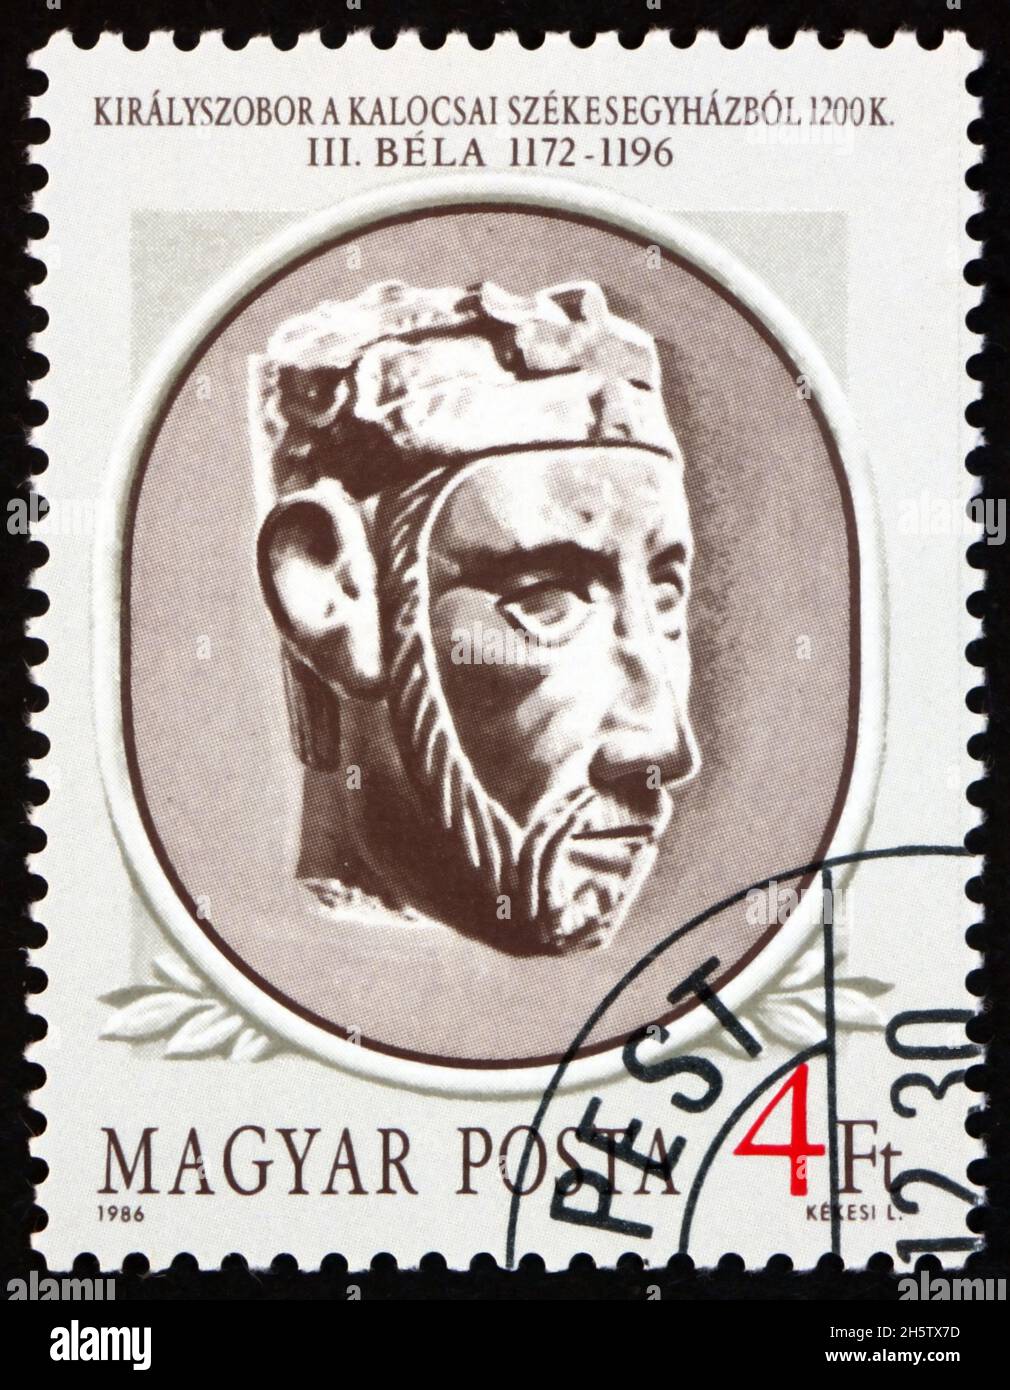 UNGHERIA - CIRCA 1986: Un francobollo stampato in Ungheria mostra il ritratto di Bela III, re ungherese 1172-1196, circa 1986 Foto Stock